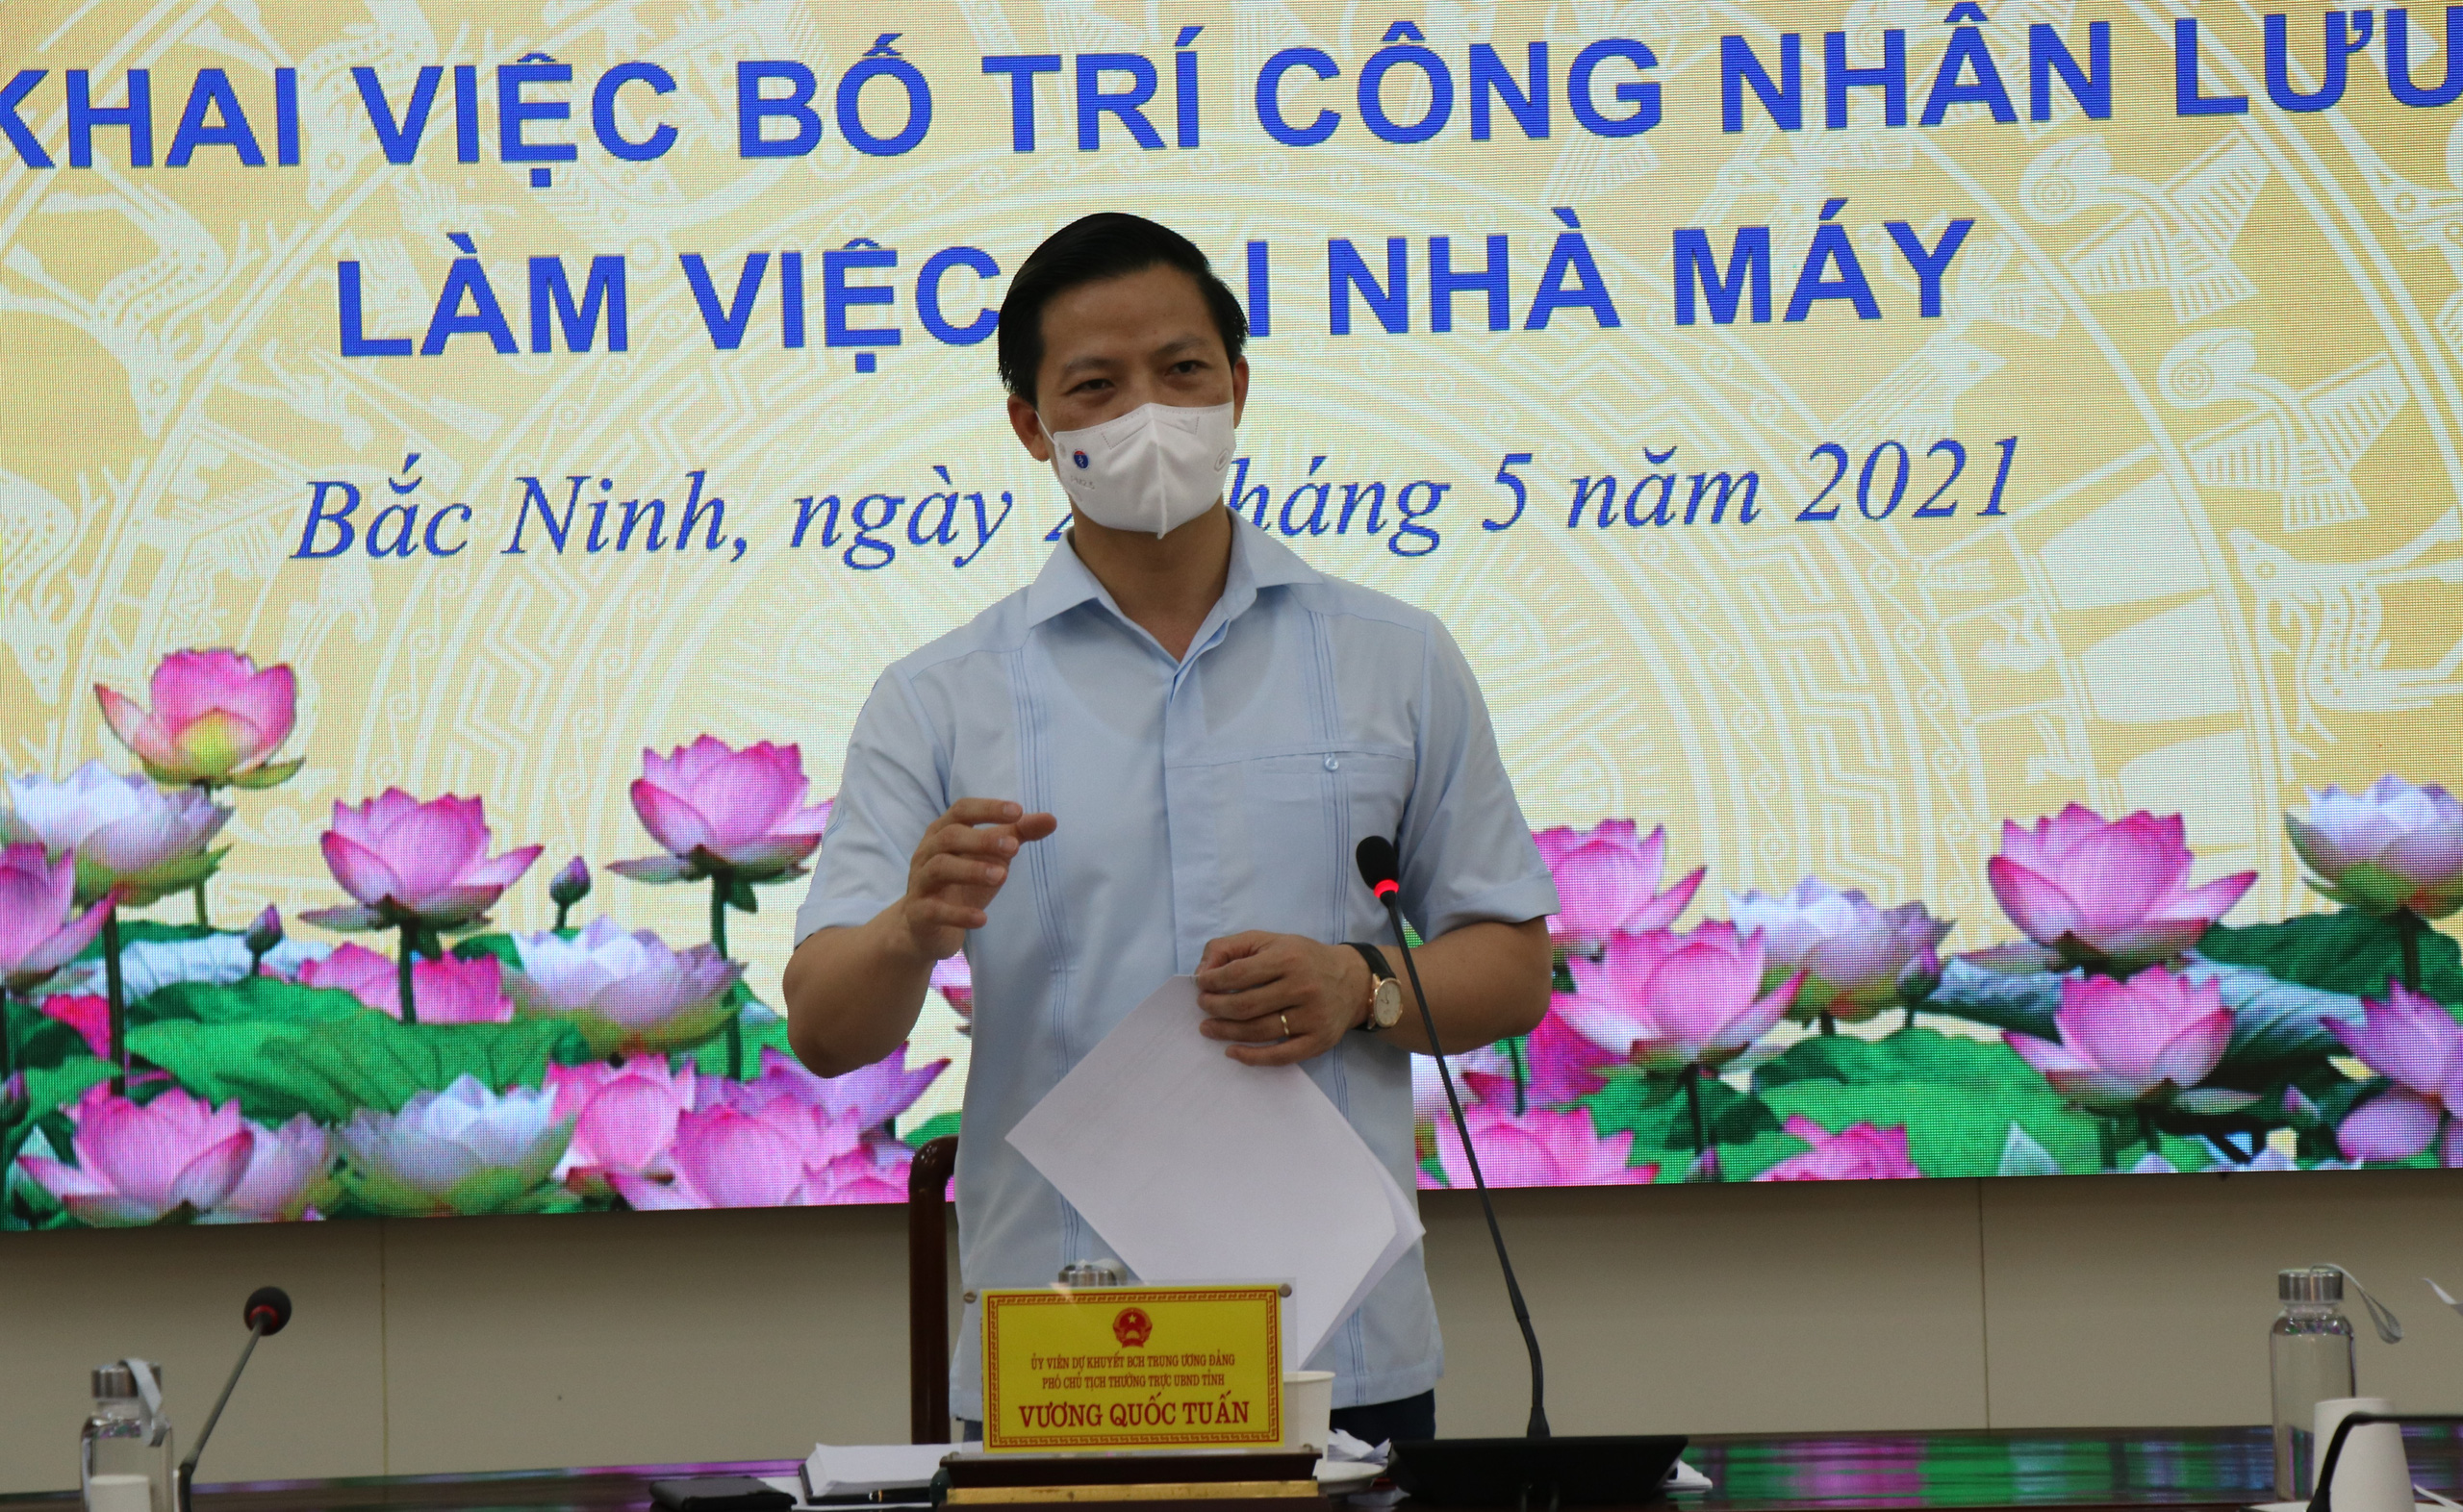 Bắc Ninh: Đề xuất đưa công nhân vào ăn, ở, làm việc trong nhà máy ít nhất 15 ngày, không đi ra ngoài - Ảnh 4.